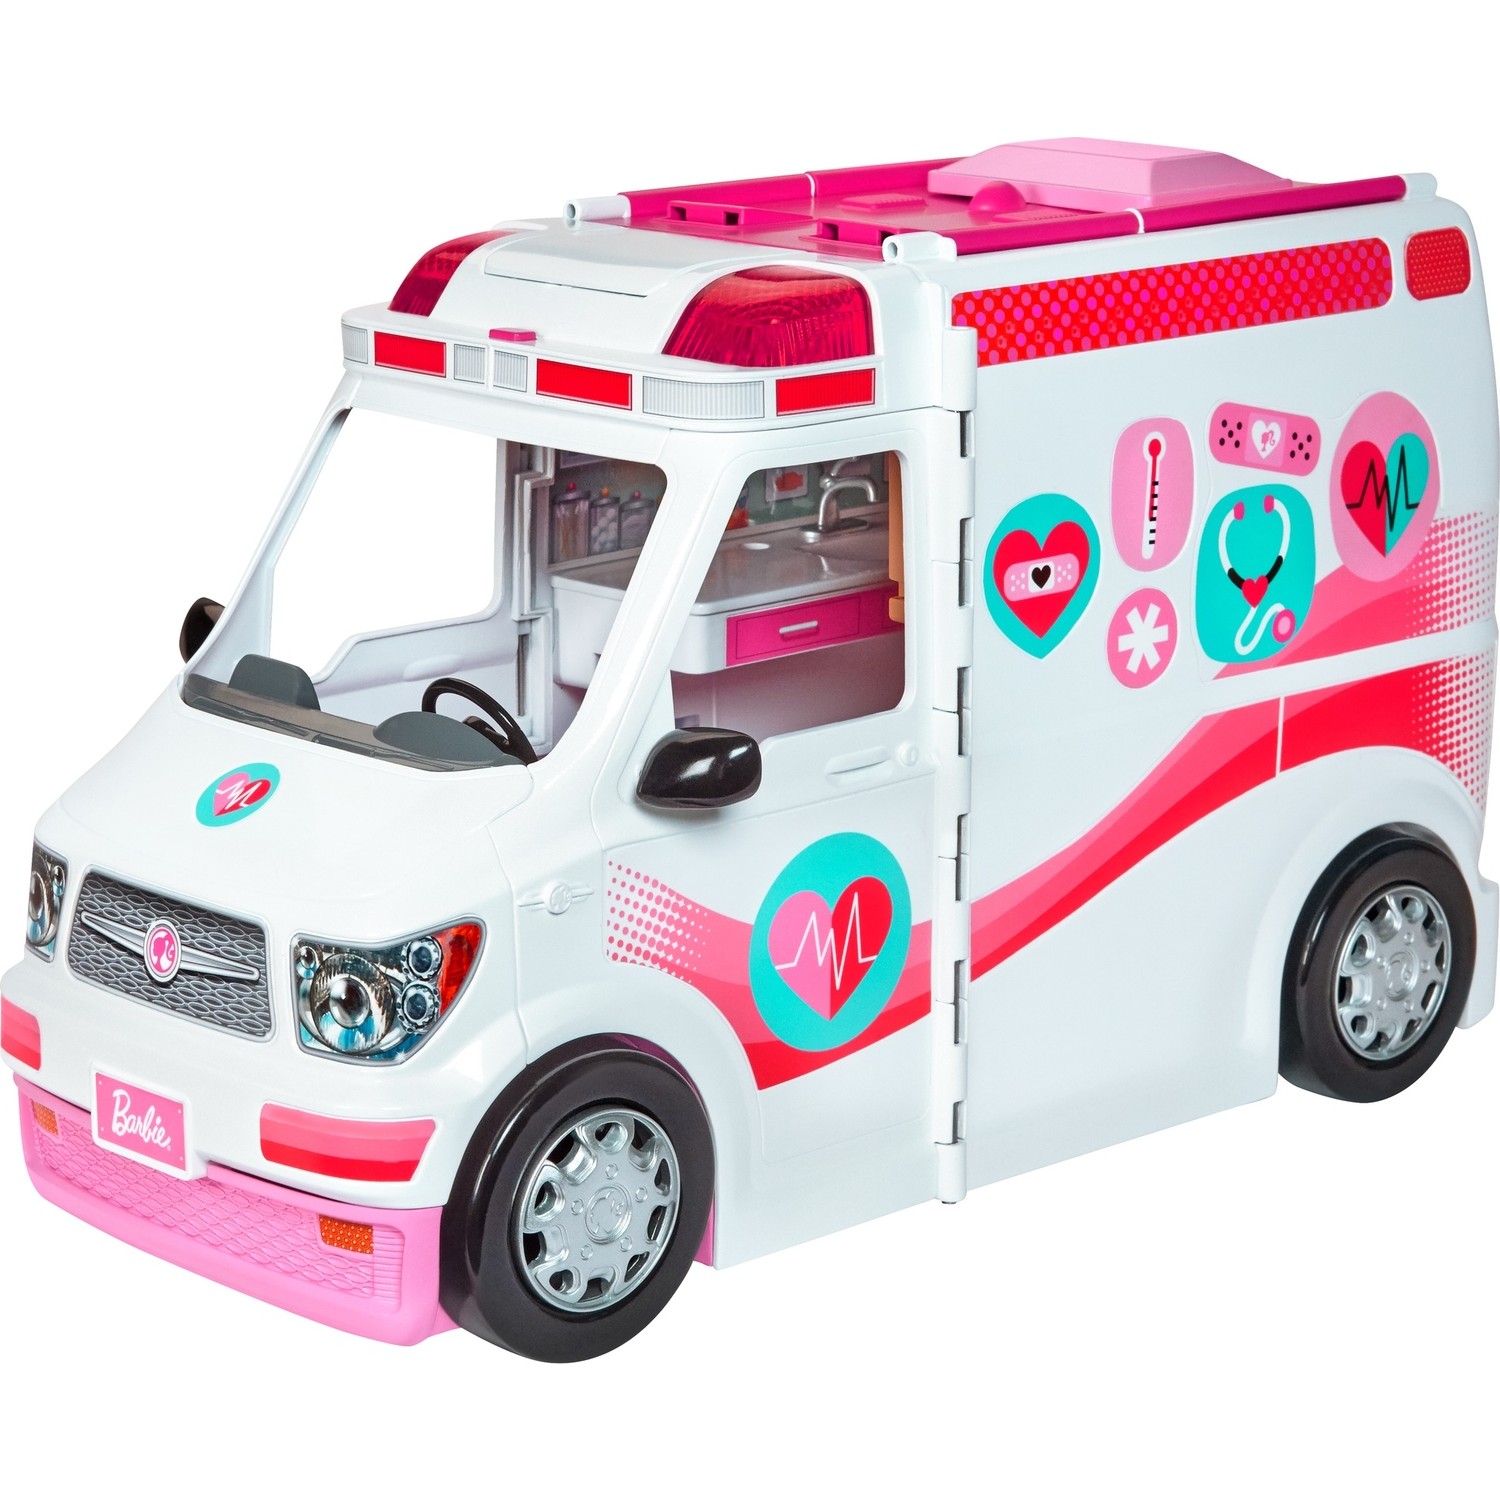 Машина скорой помощи Barbie со звуком и светом Frm19 машины siku скорая помощь 0805